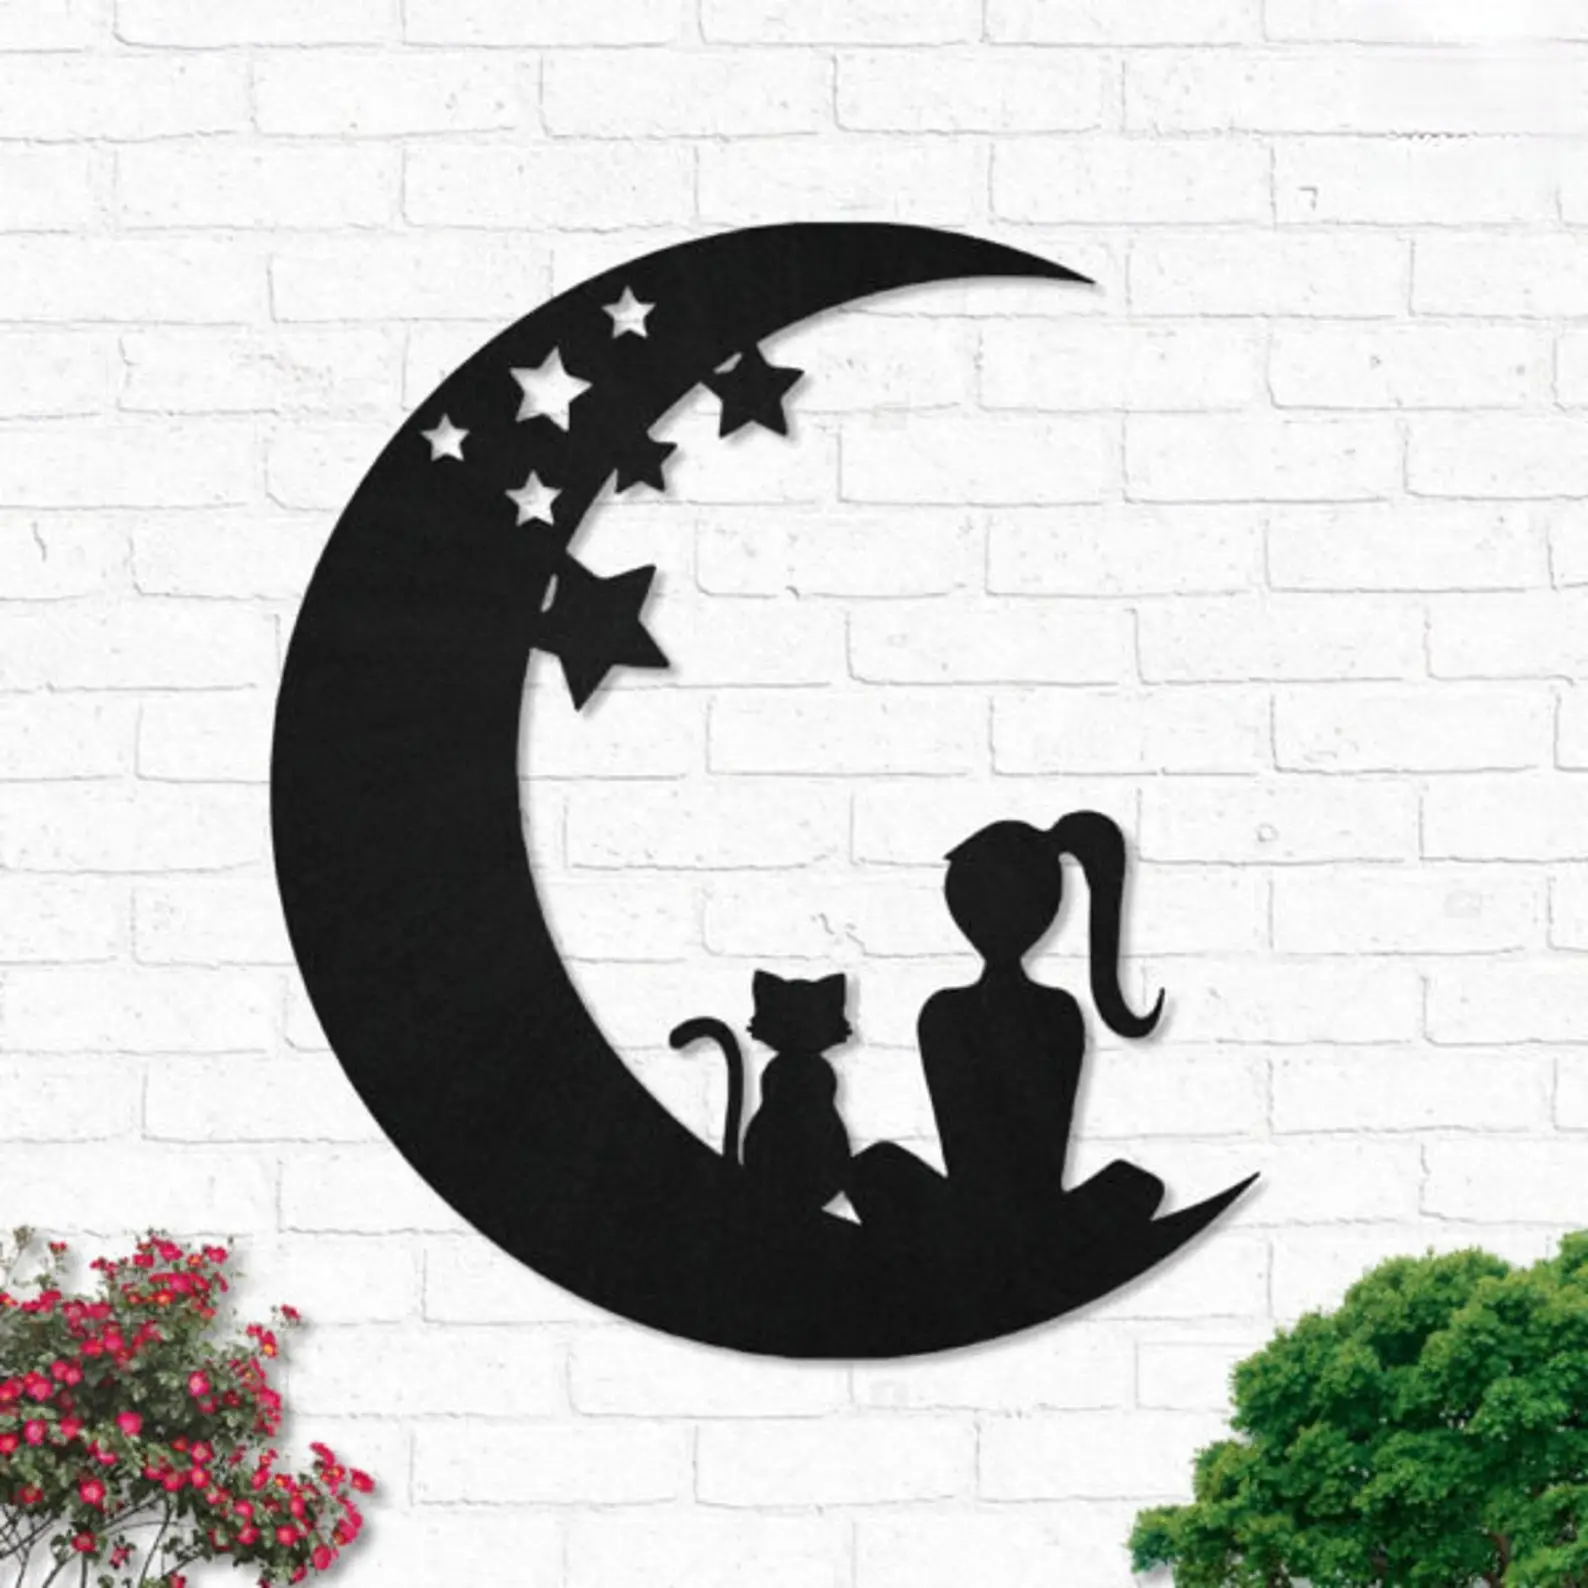 Décoration murale LED personnalisée avec bande lumineuse pour chat et lune, panneau pour animaux de compagnie, décoration extérieure, éclairage mural, Art mural en métal